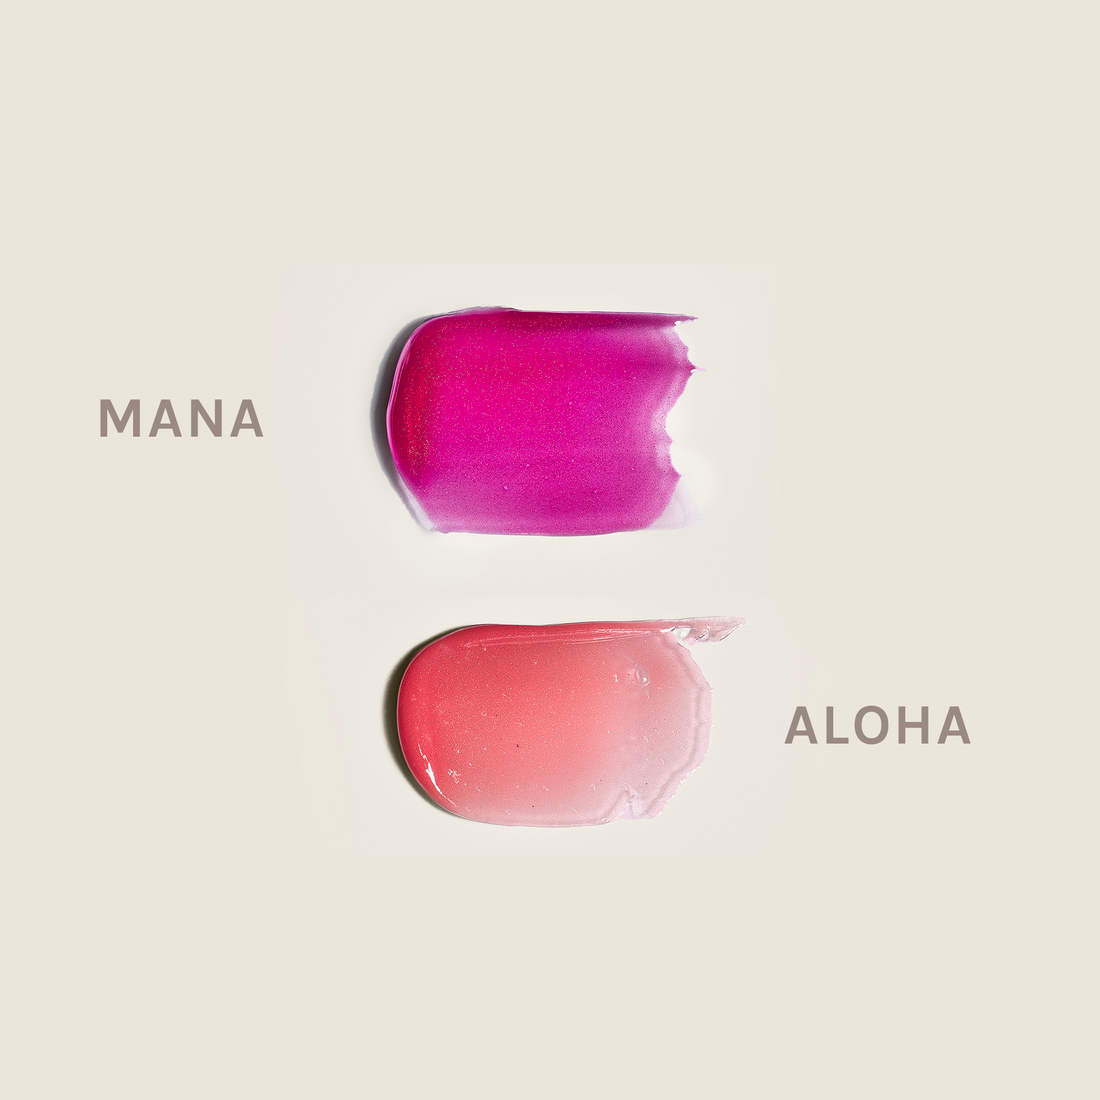 {"color":"Mana/Aloha"}